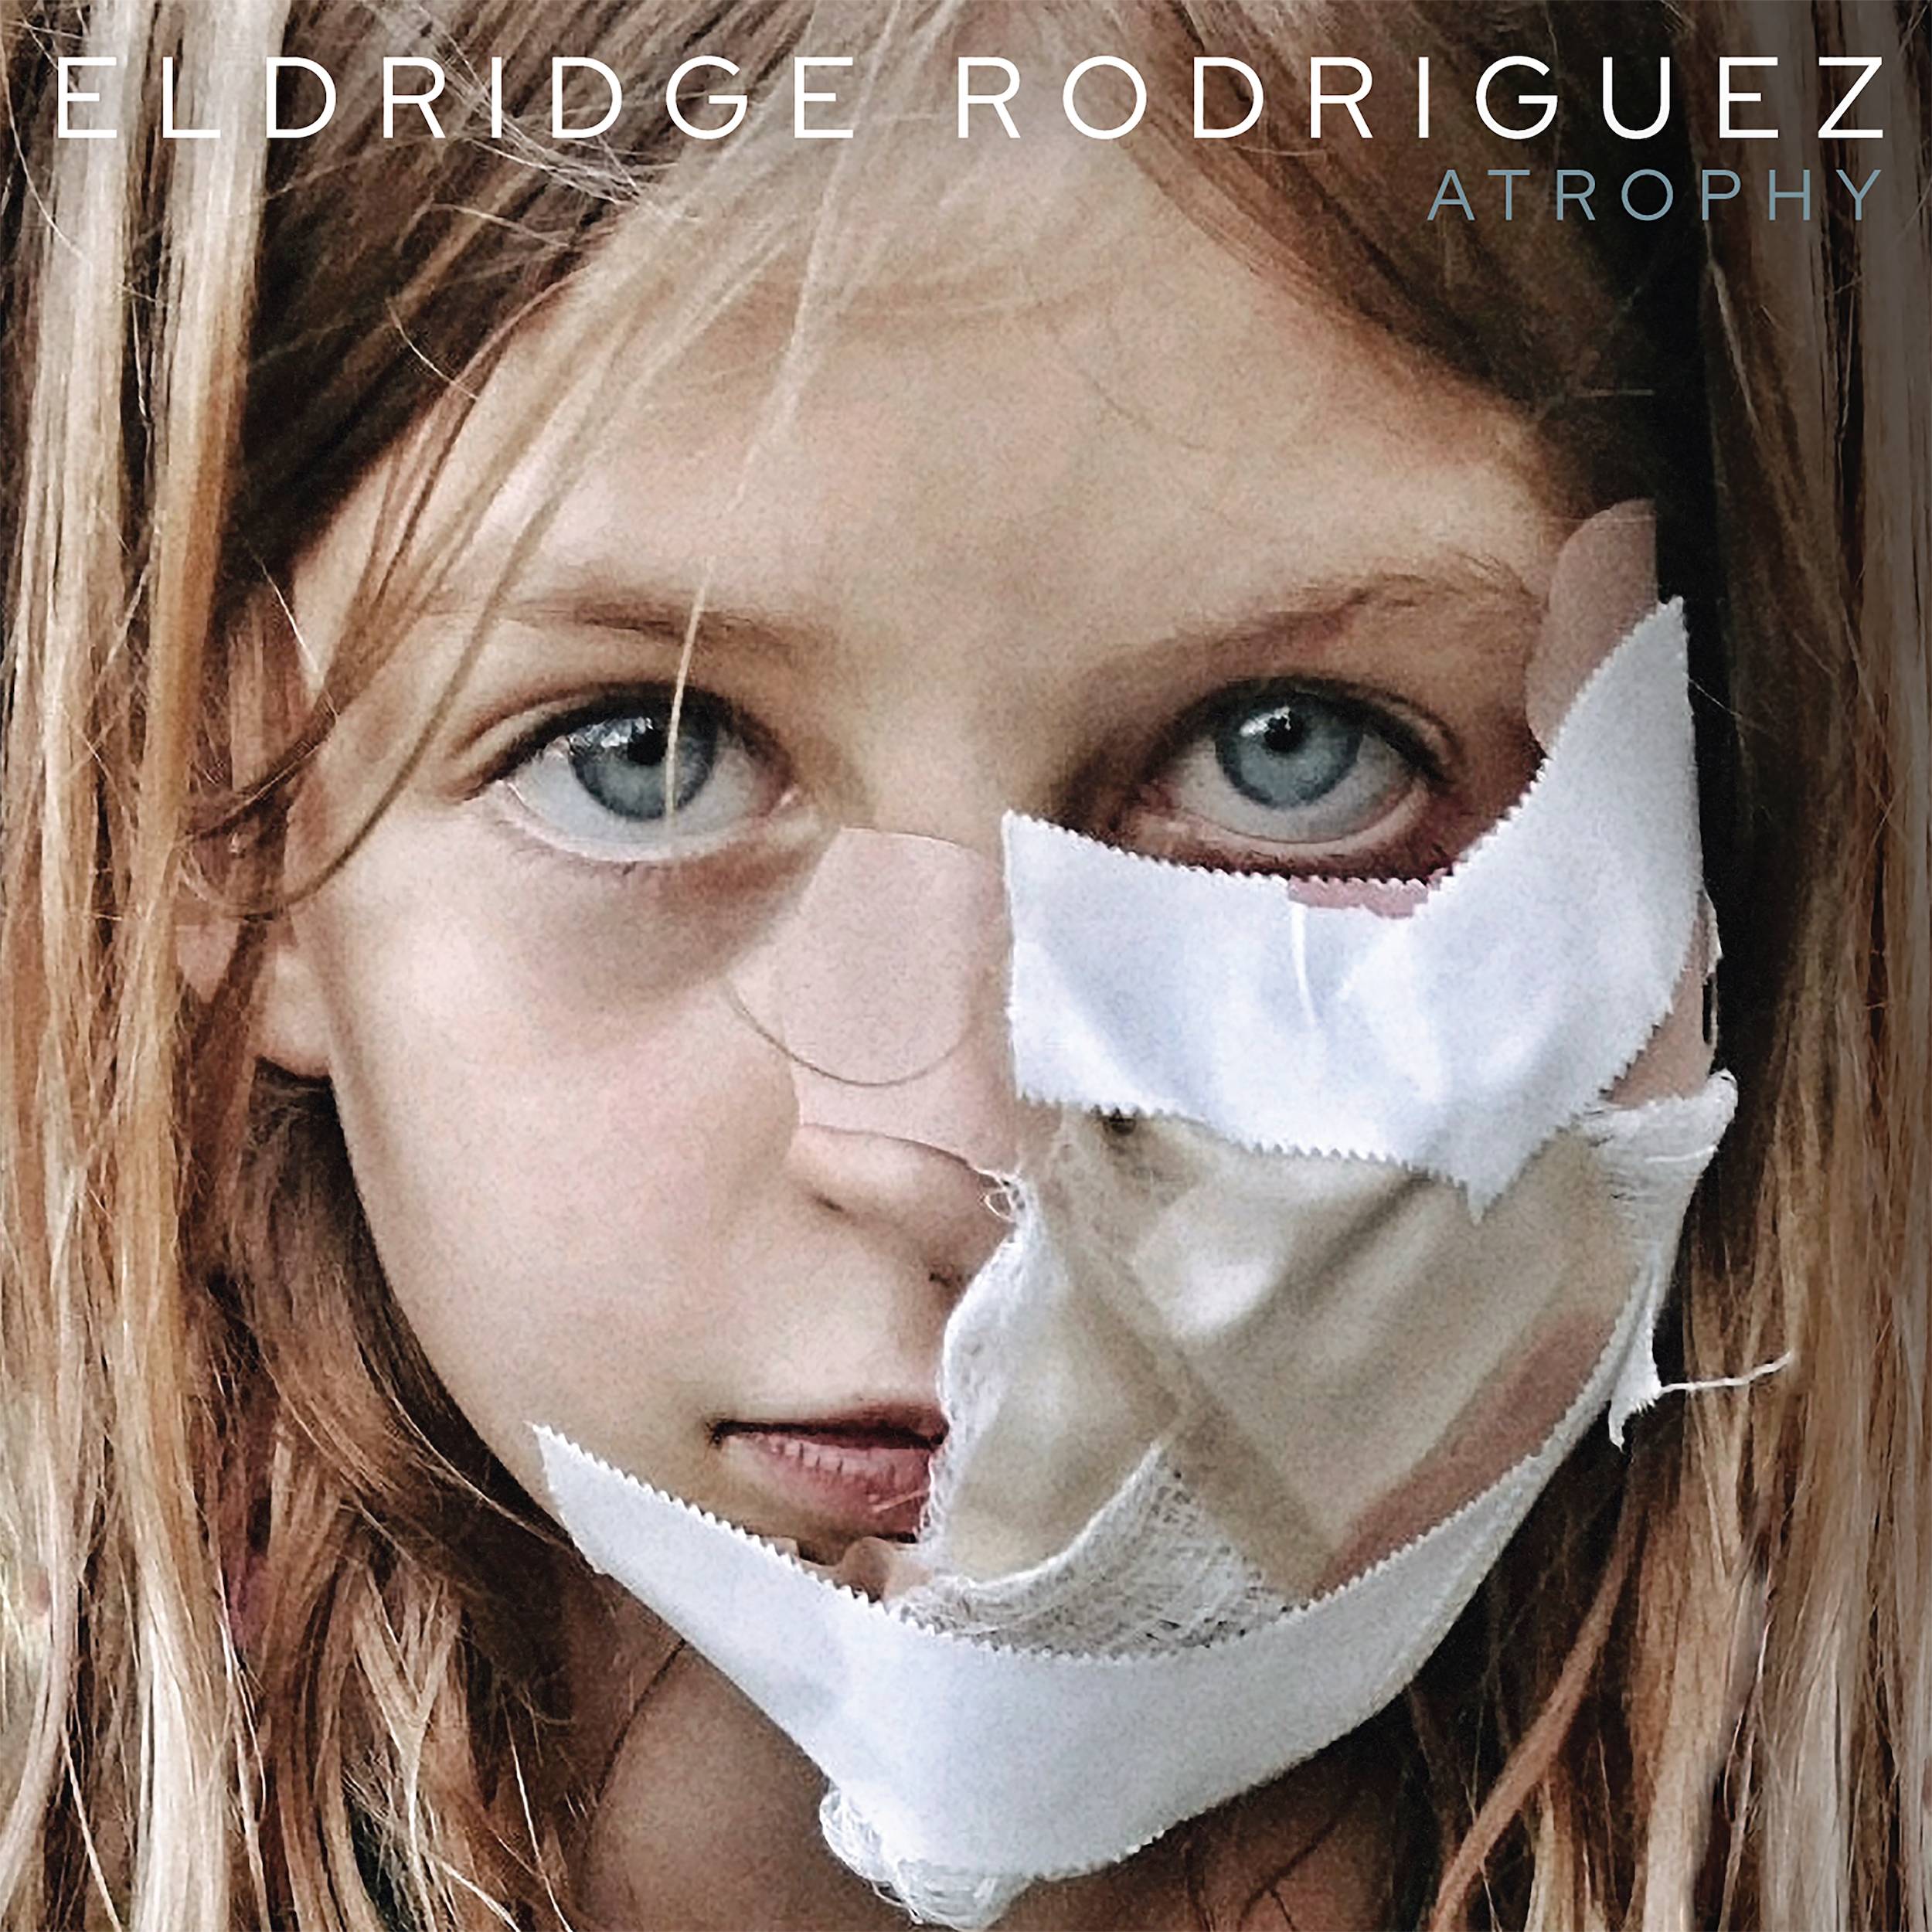 Eldridge Rodriguez ‘Atropy’ album artwork